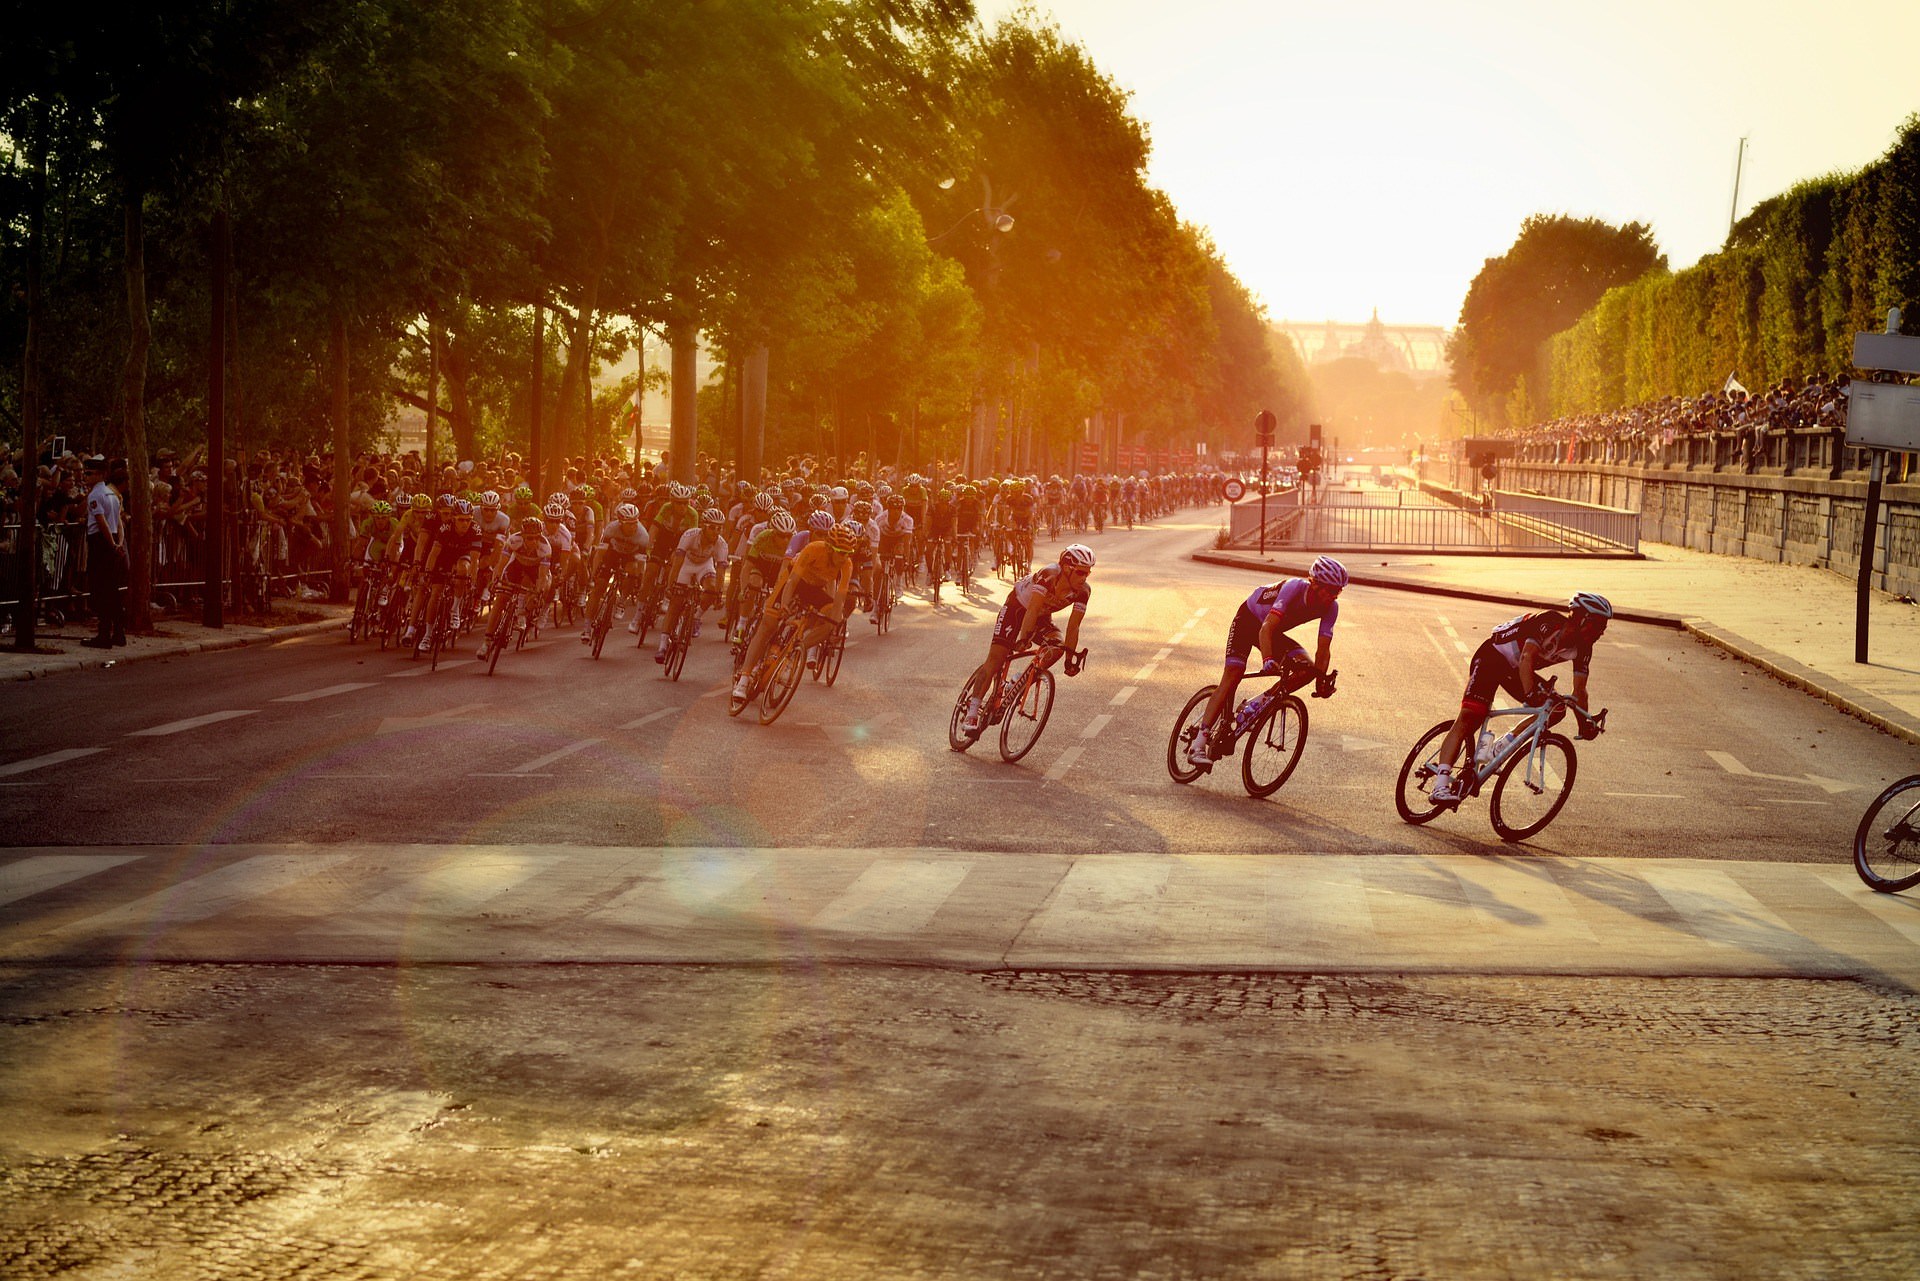 Check out the Tour de France!